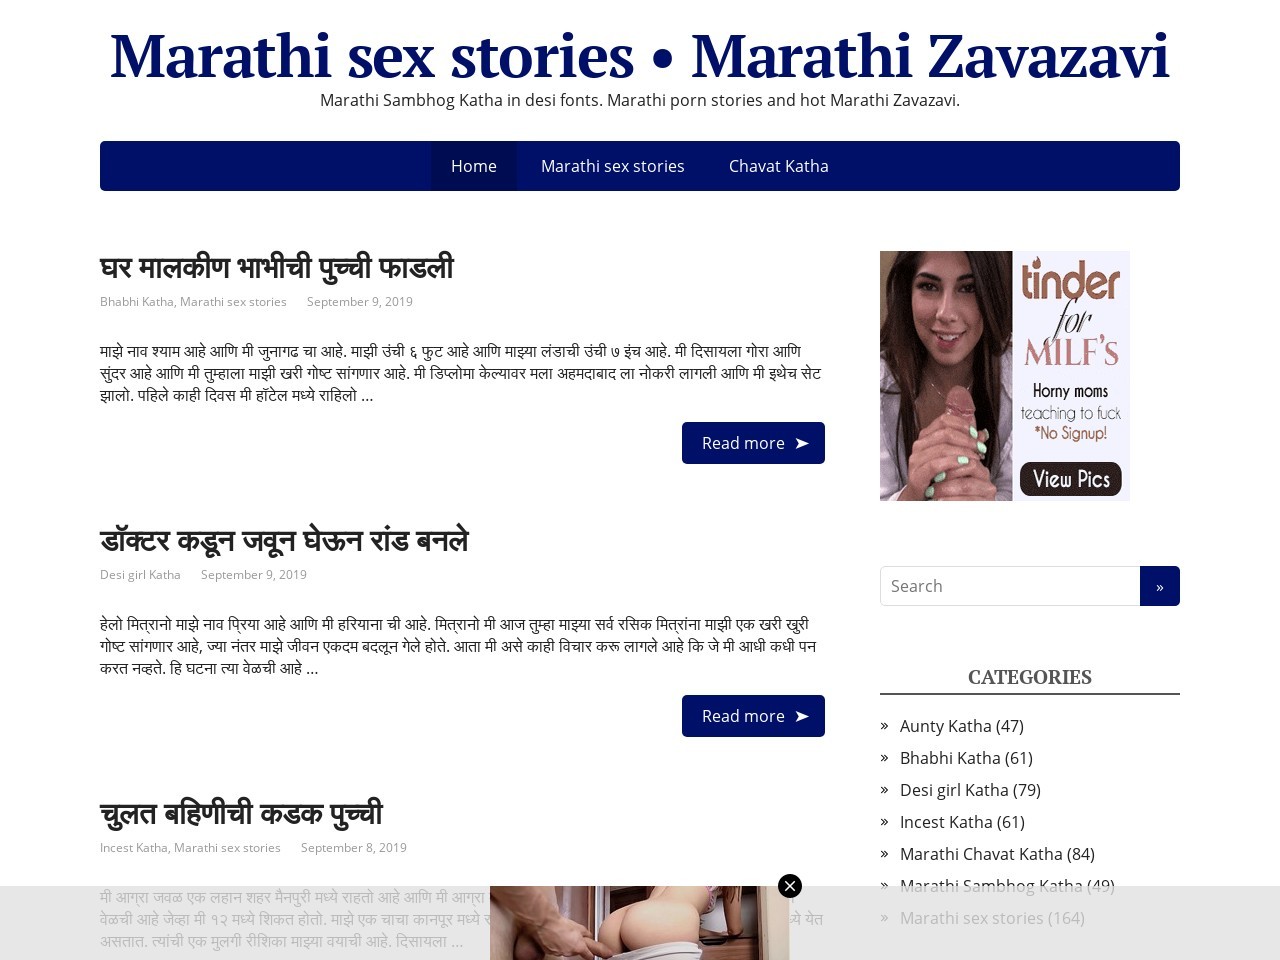 1280px x 960px - Marathi Zavazavi & 20+ Indian Sex Stories Sites Like marathisexkatha.com